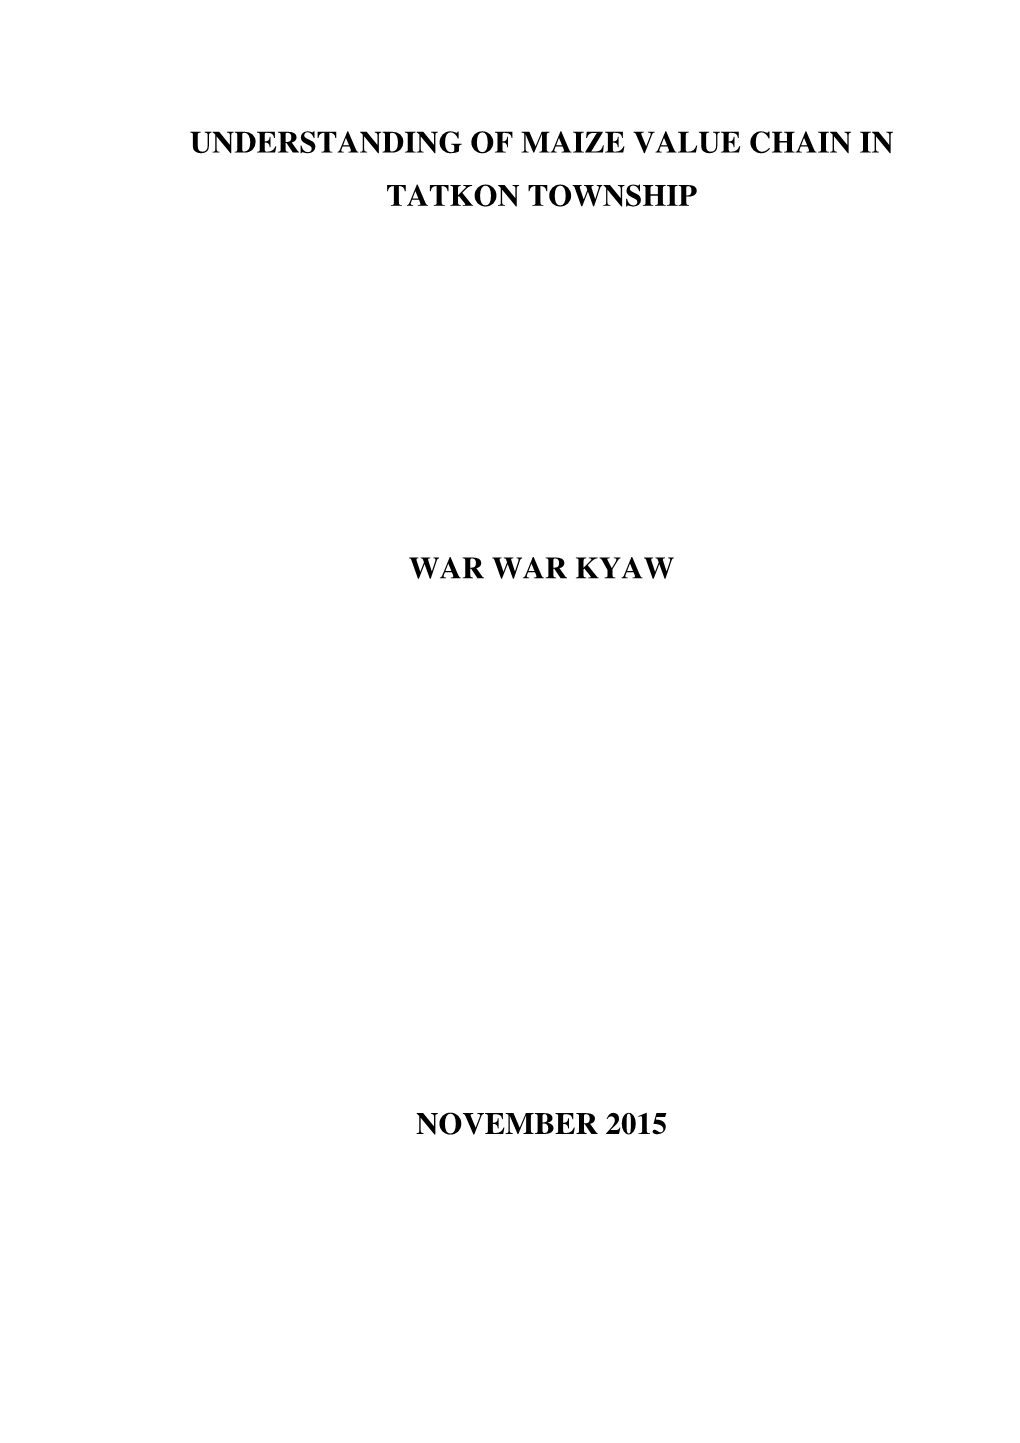 War War Kyaw 16.10.15